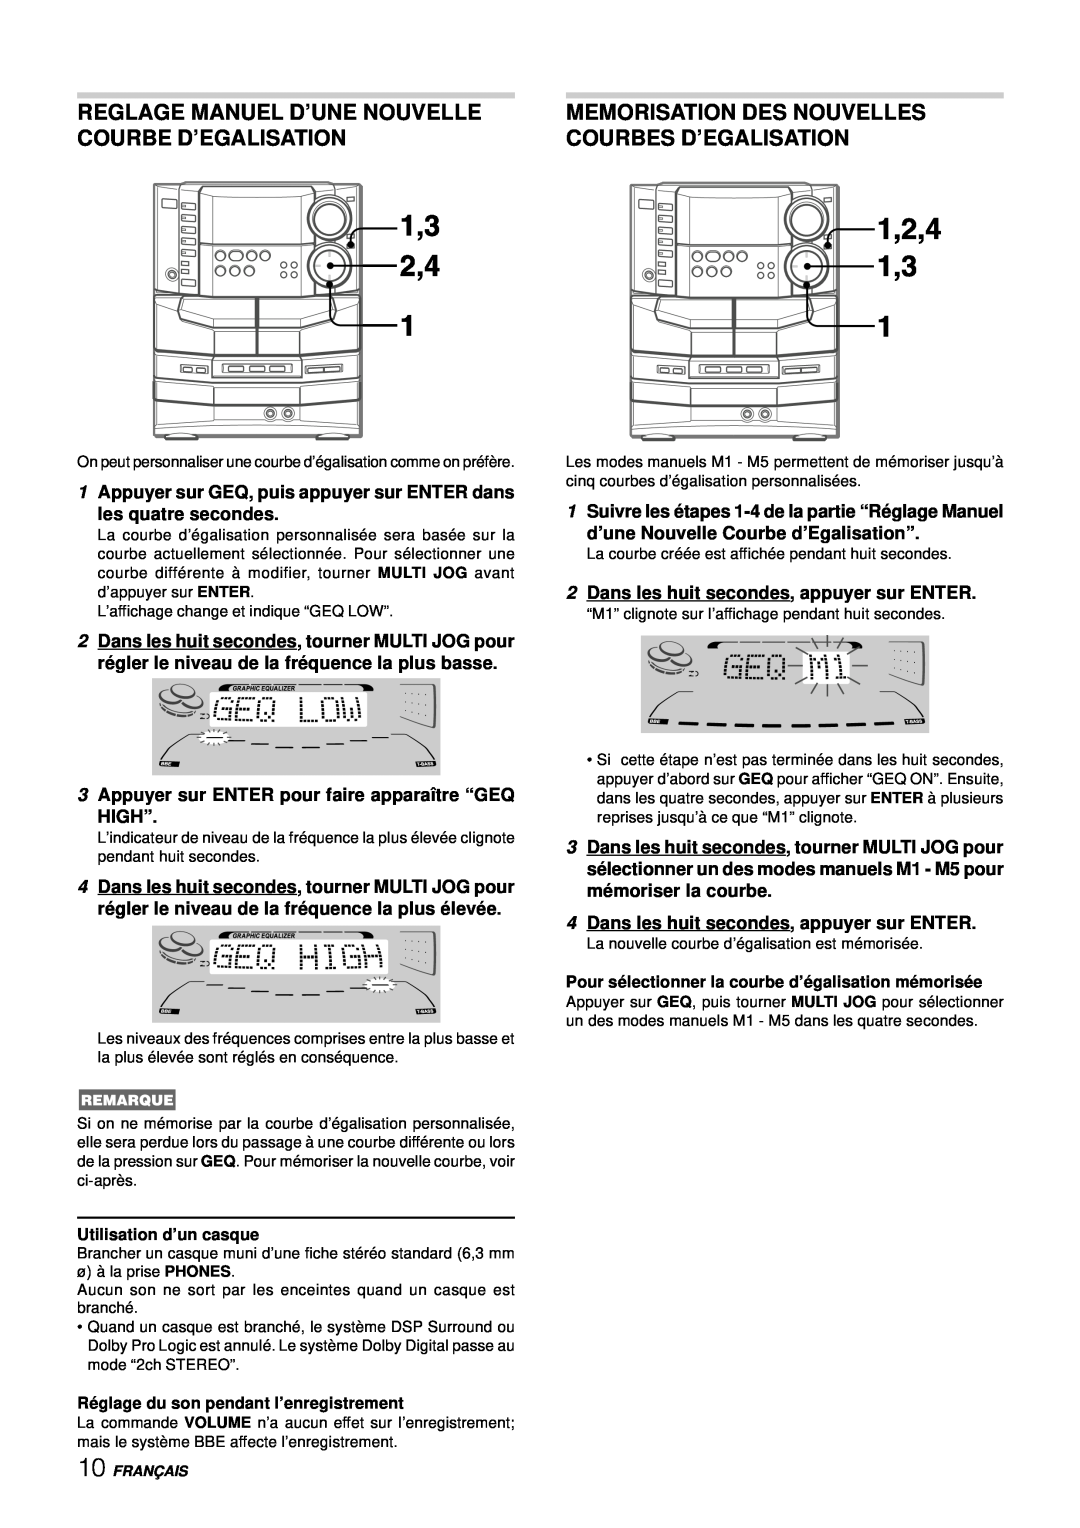 Aiwa NSX-DS8 manual Memorisation Des Nouvelles Courbes D’Egalisation, 1Appuyer sur GEQ, puis appuyer sur ENTER dans, High” 